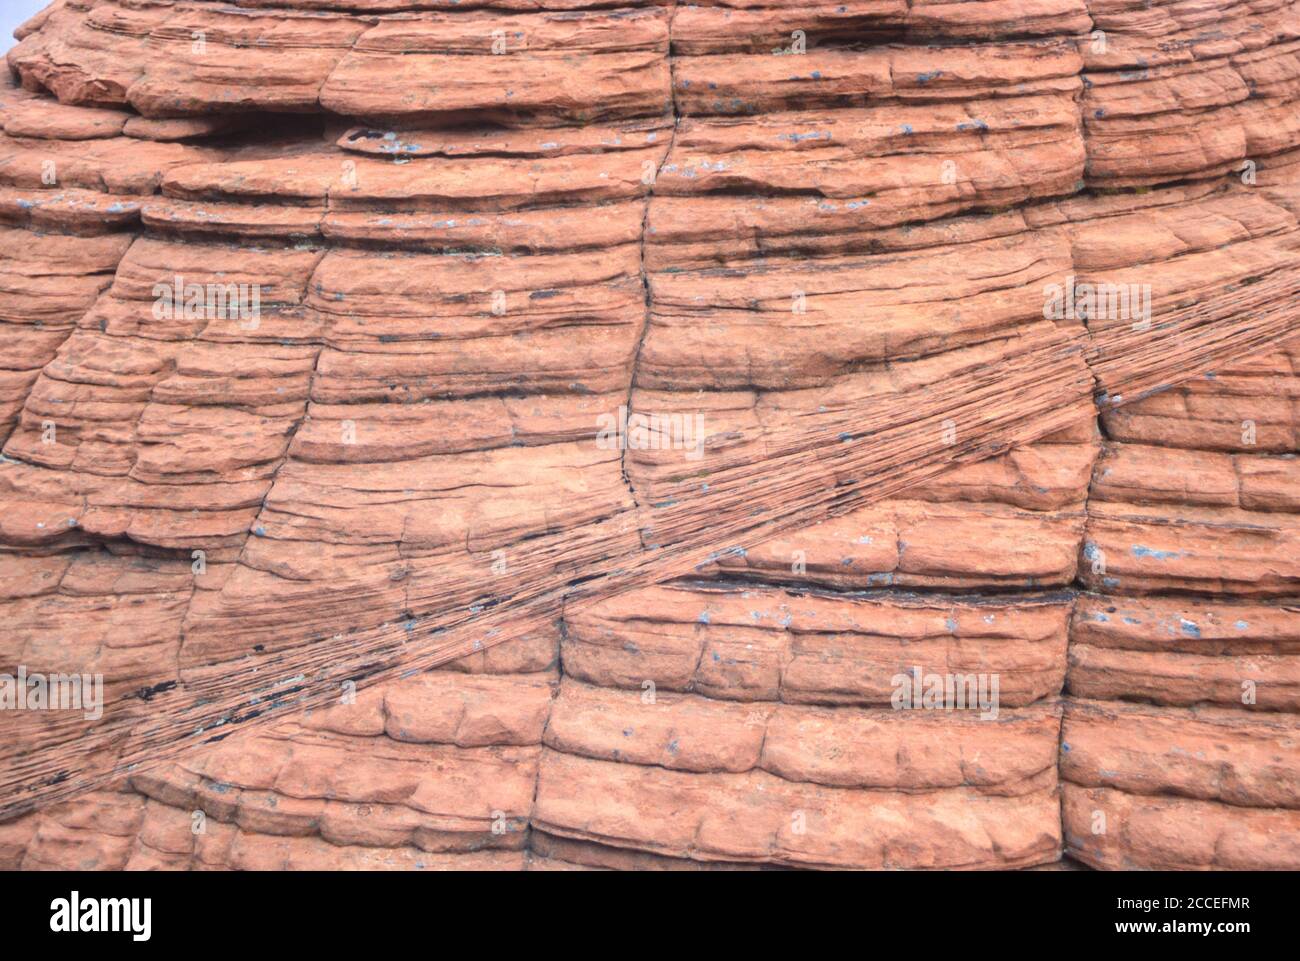 Geología. Estrías y bandas de roca. Beehive Formation, Valley of Fire, Nevada, EE.UU. Foto de stock